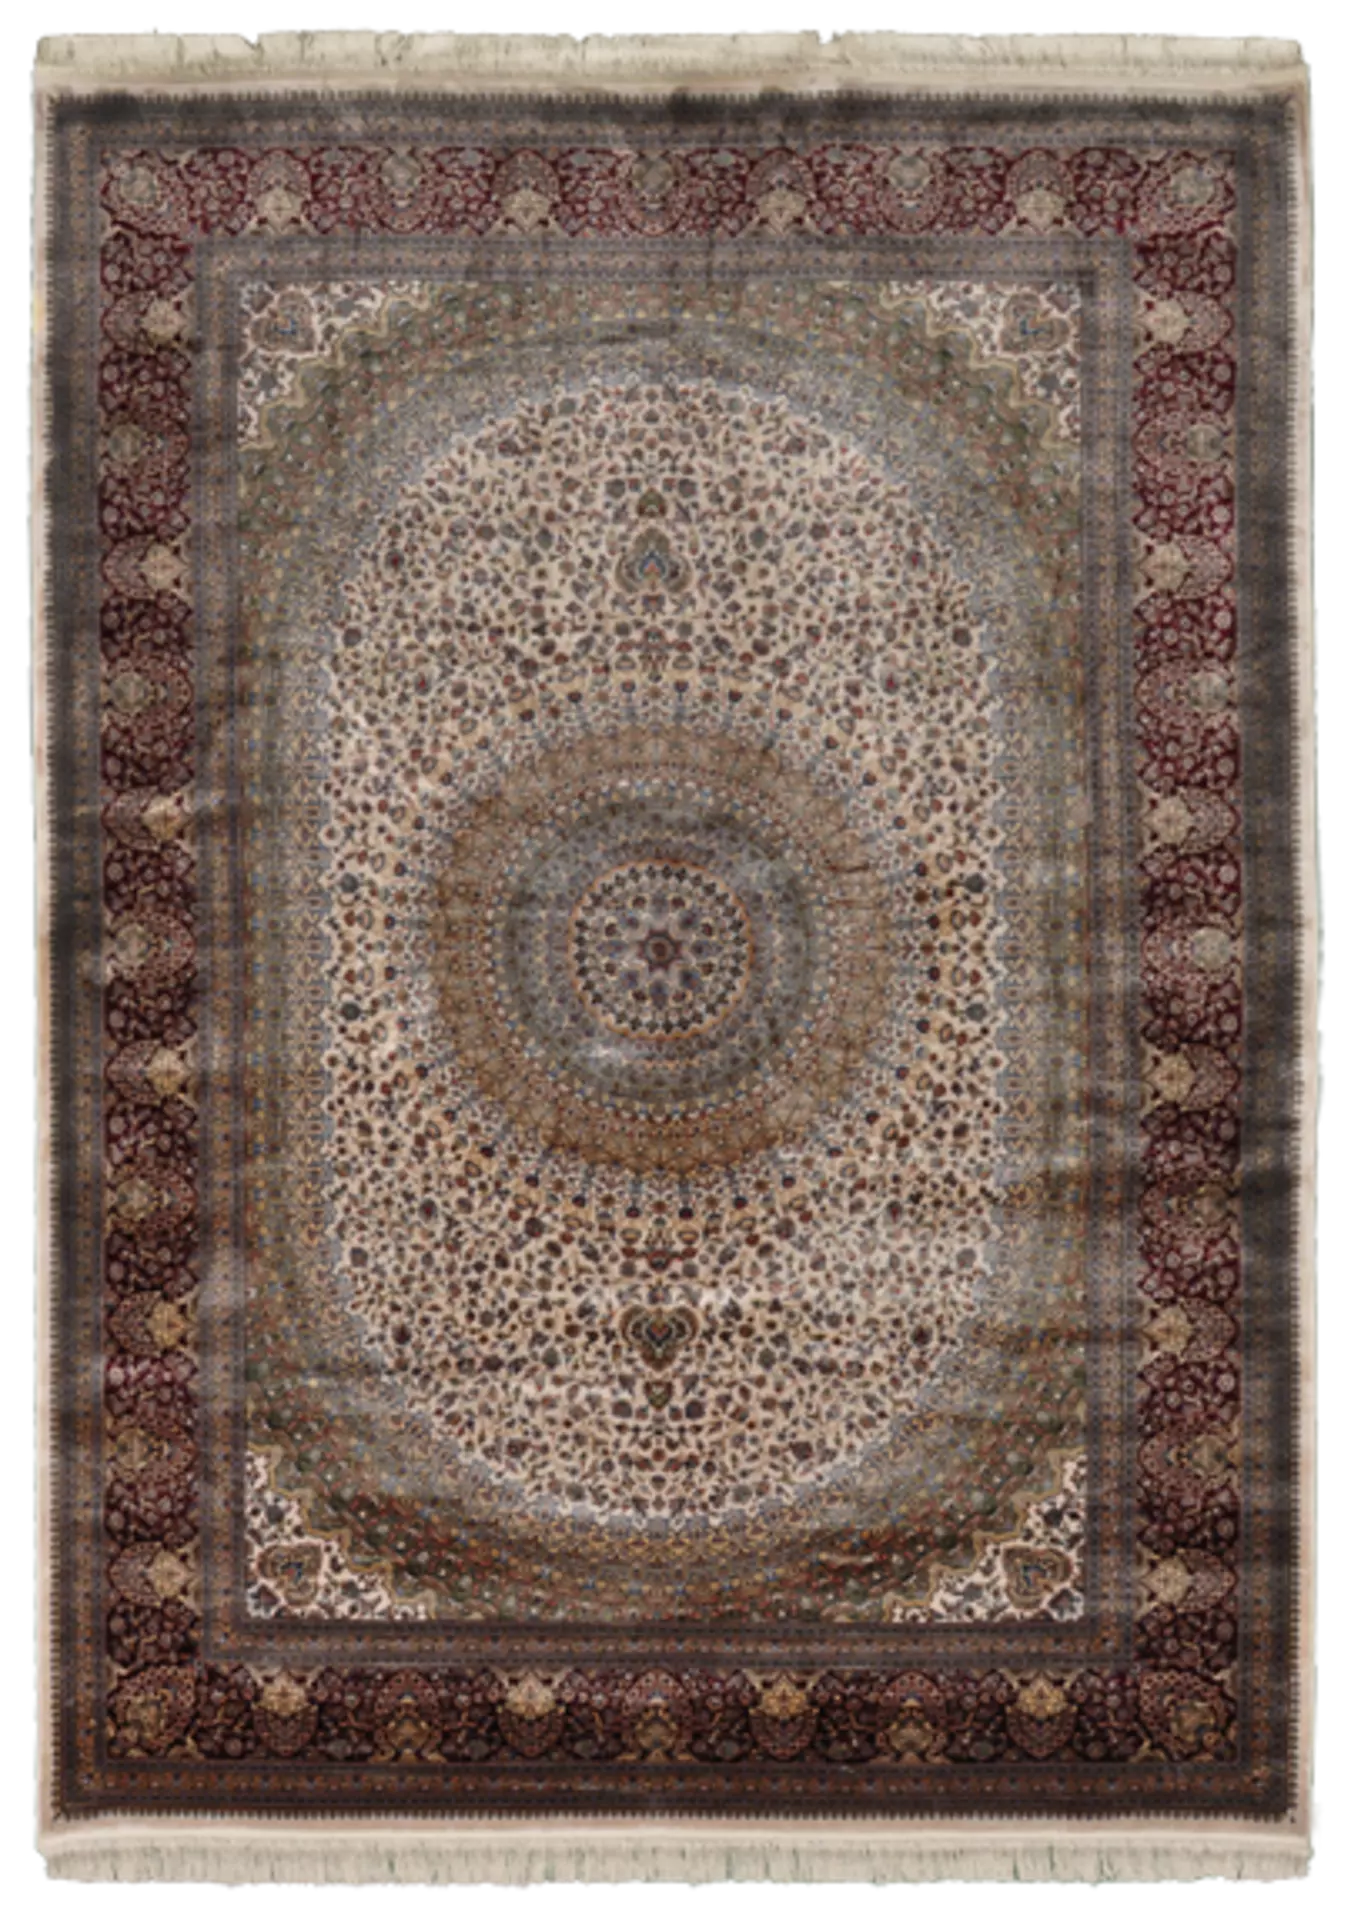 Maschinenwebteppich Anatolian Silk/ Palazzo Casa Nova Textil 80 x 140 cm